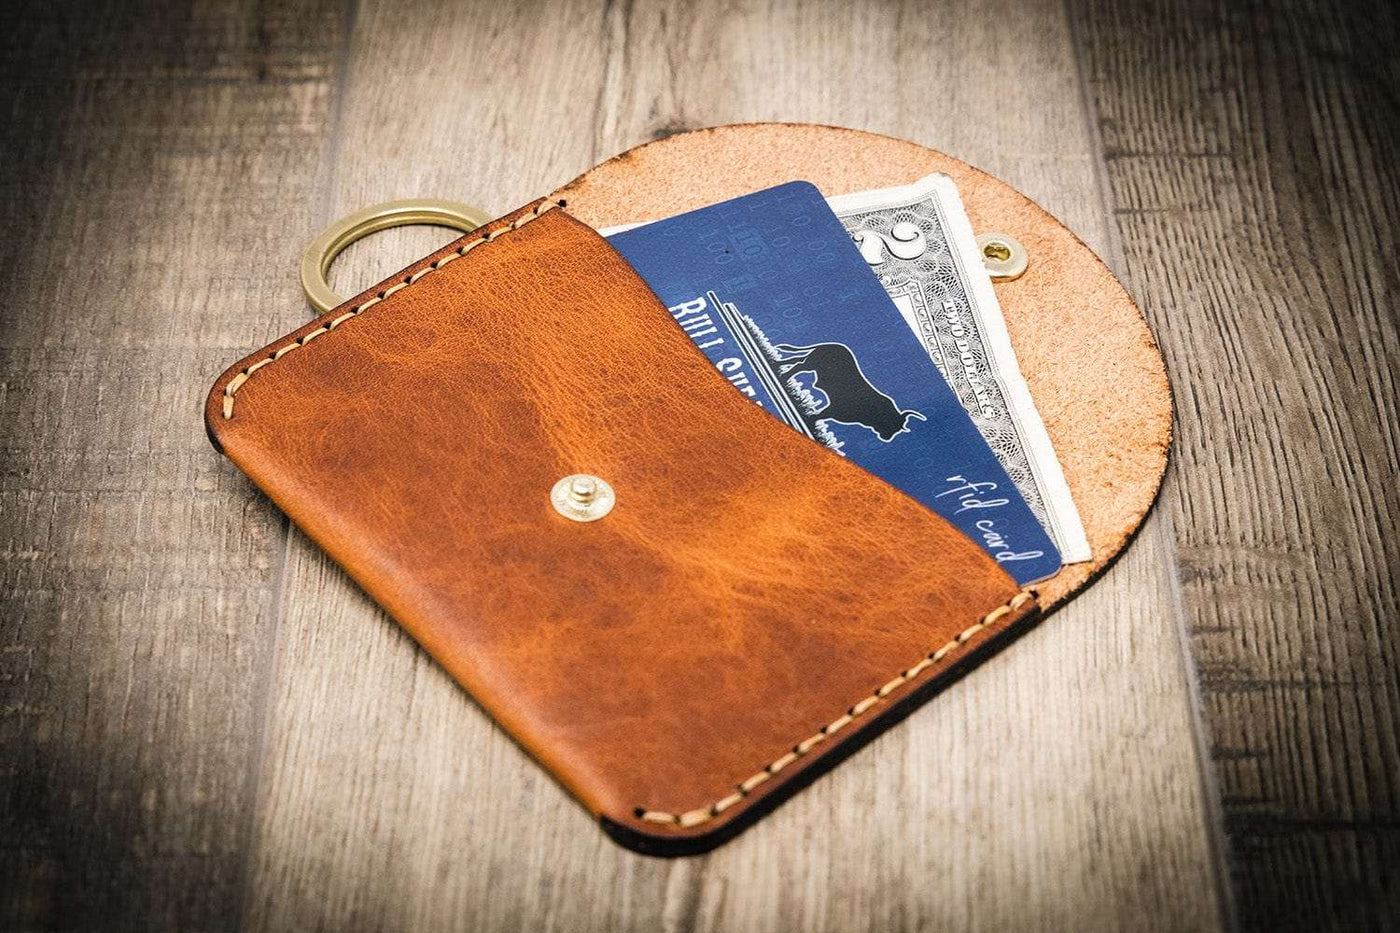 Keychain Leather Wallet - The Richmond - Chestnut